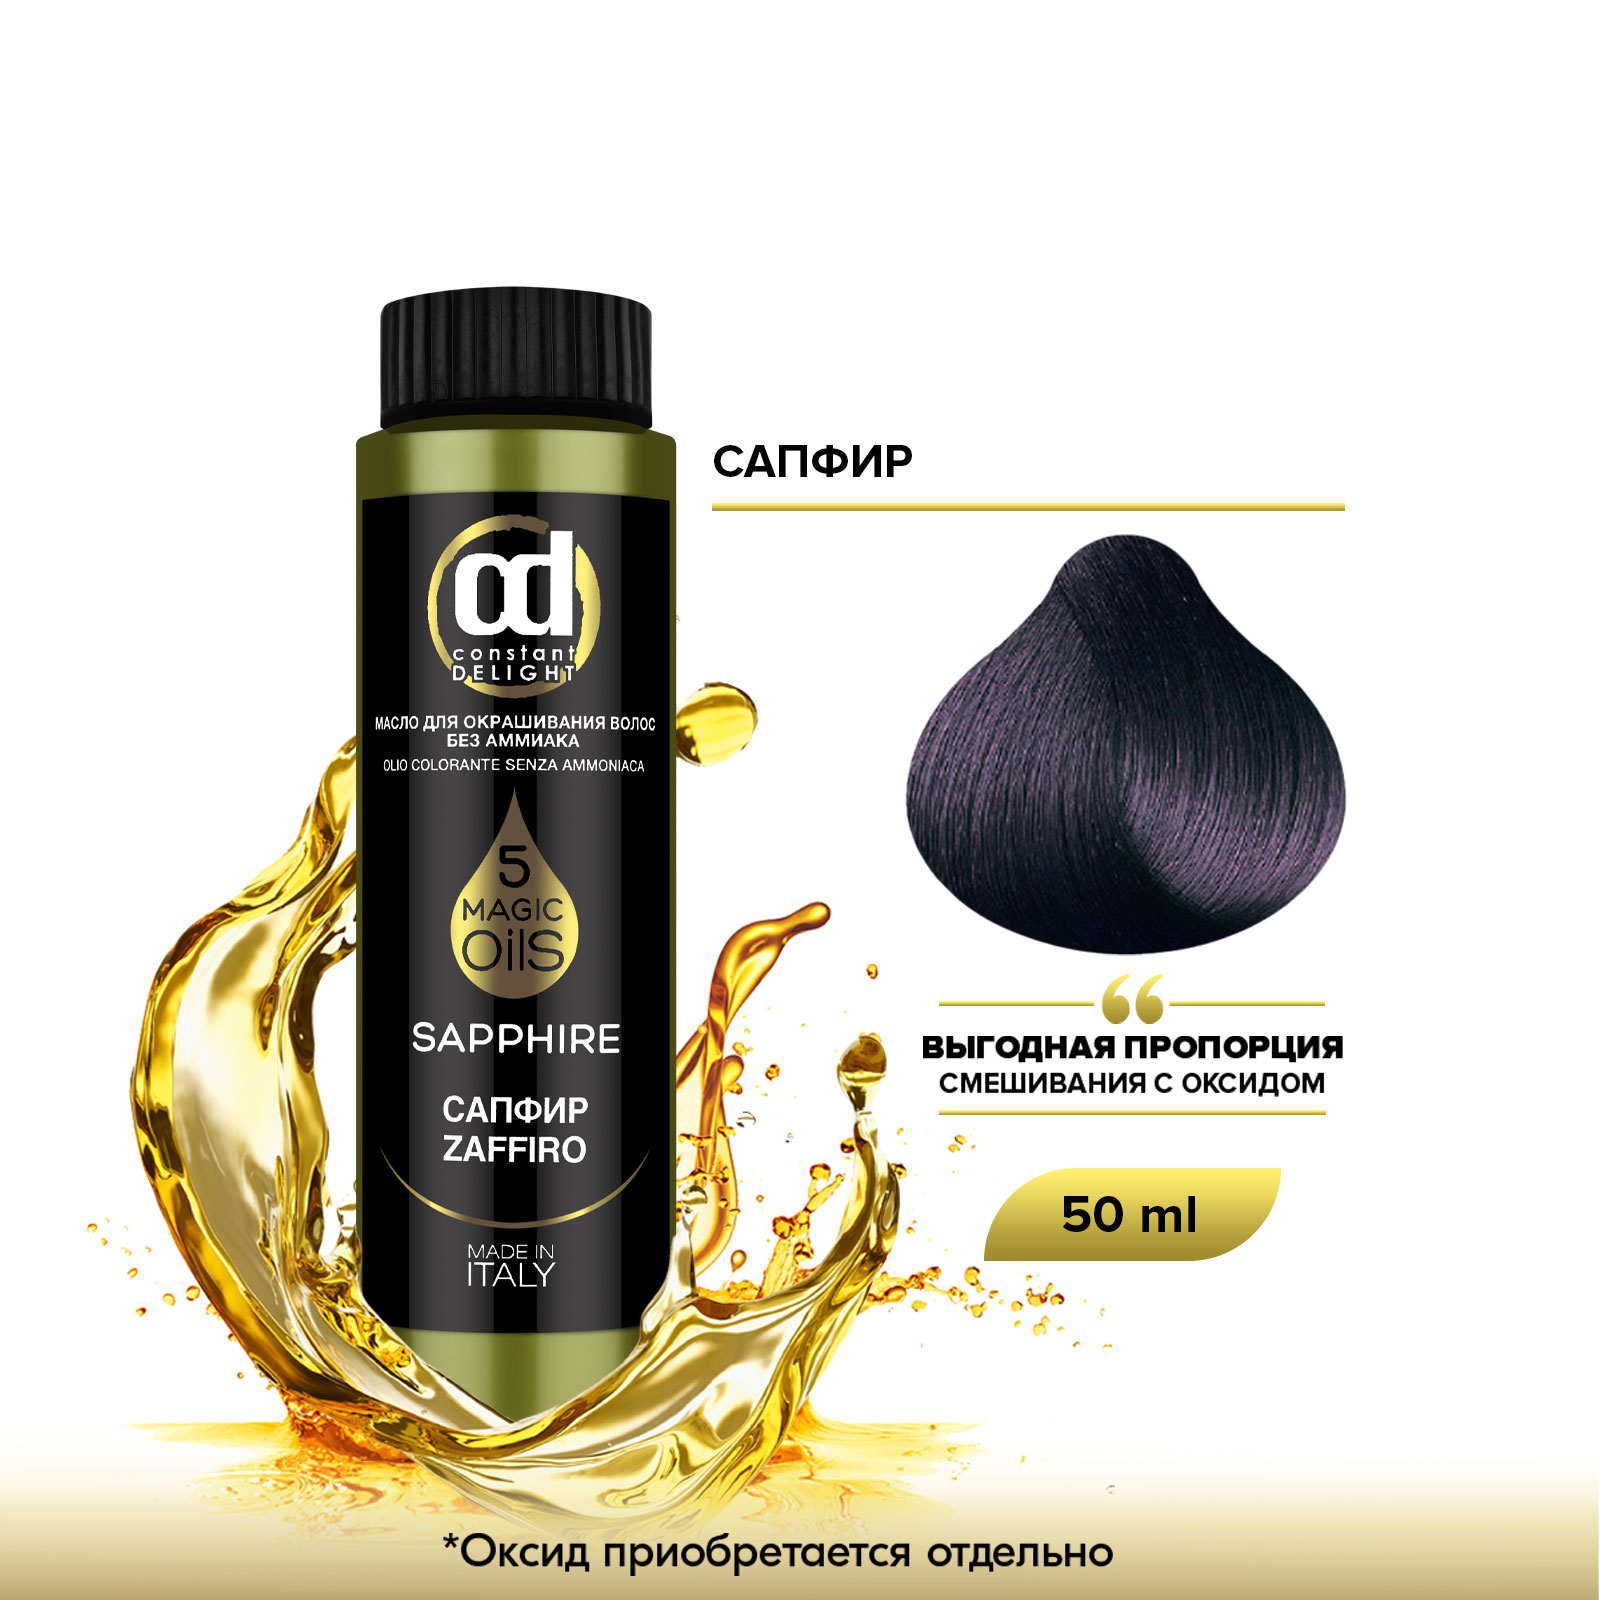 Масло Constant Delight Magic 5 Oils для окрашивания волос сапфир 50 мл масло constant delight magic 5 oils для окрашивания волос фиолетовый 50 мл